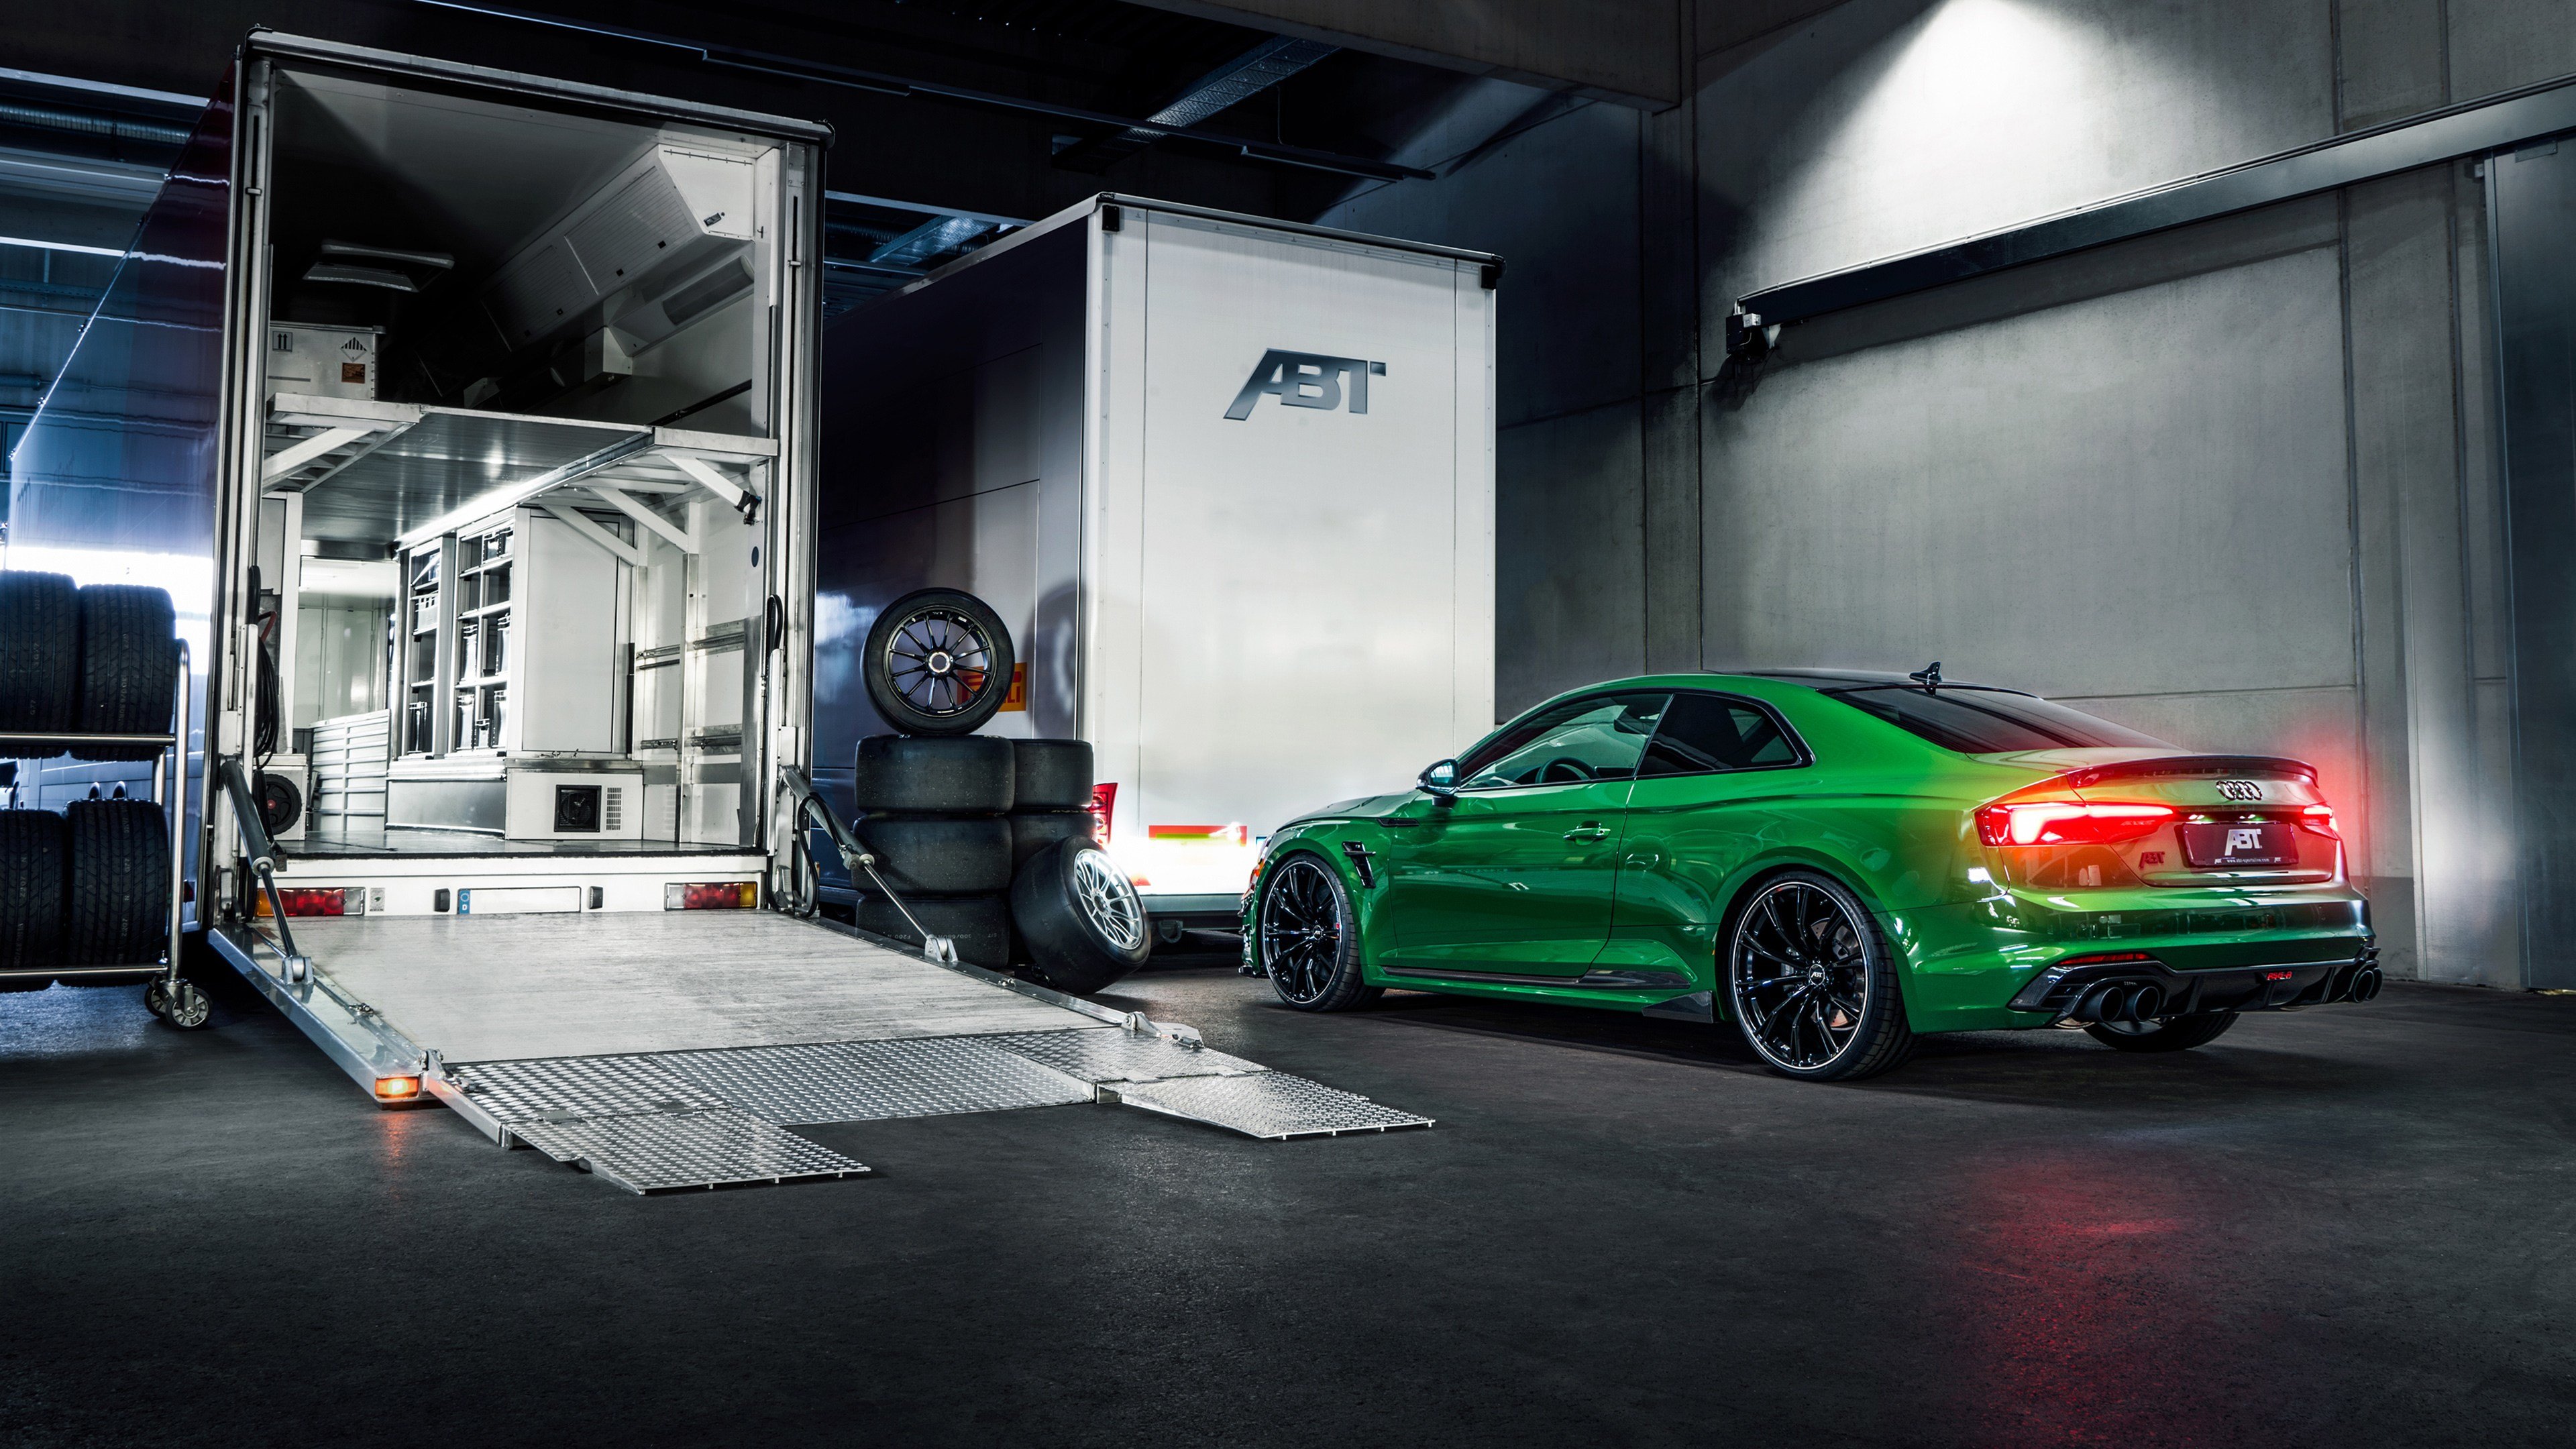 2018 Abt Audi Rs6 Avant For Jon Olsson 4k 3 Wallpapers - 4k Wallpaper Audi Abt , HD Wallpaper & Backgrounds